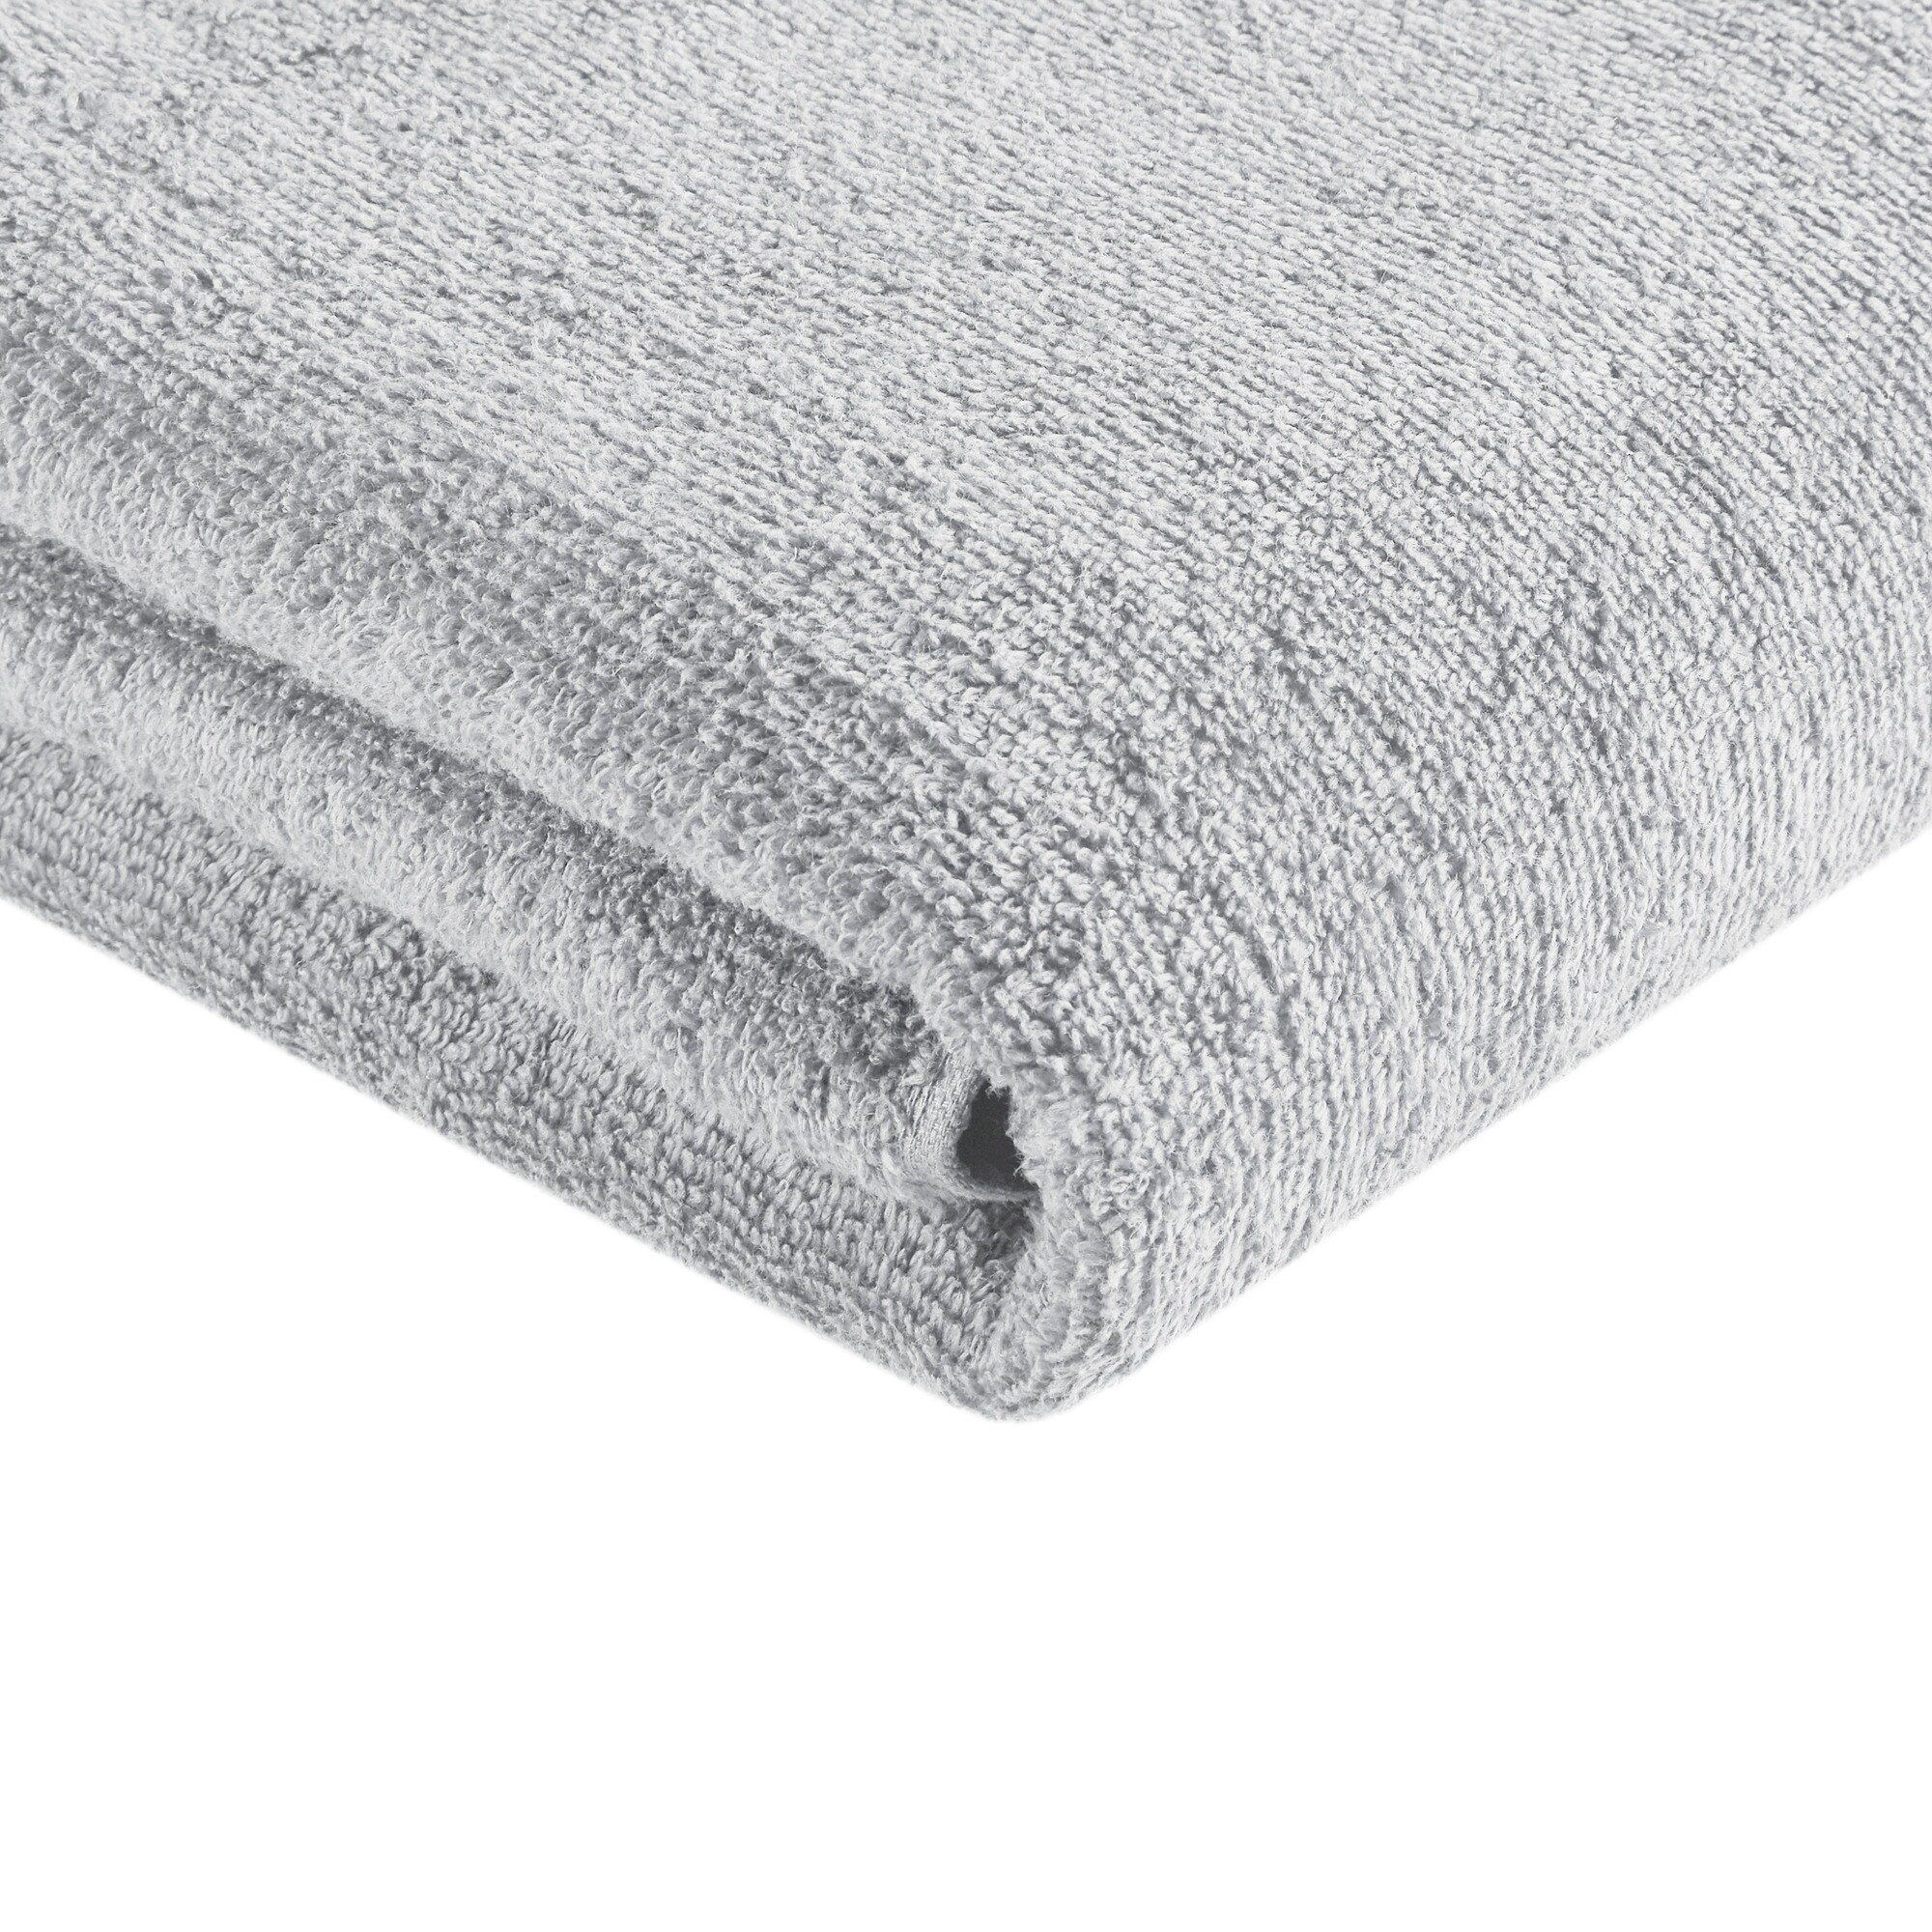 https://ak1.ostkcdn.com/images/products/is/images/direct/b0e0f0c64805934e32068929818a2d82b33866e4/510-Design-Big-Bundle-100%25-Cotton-Quick-Dry-12-Piece-Bath-Towel-Set.jpg